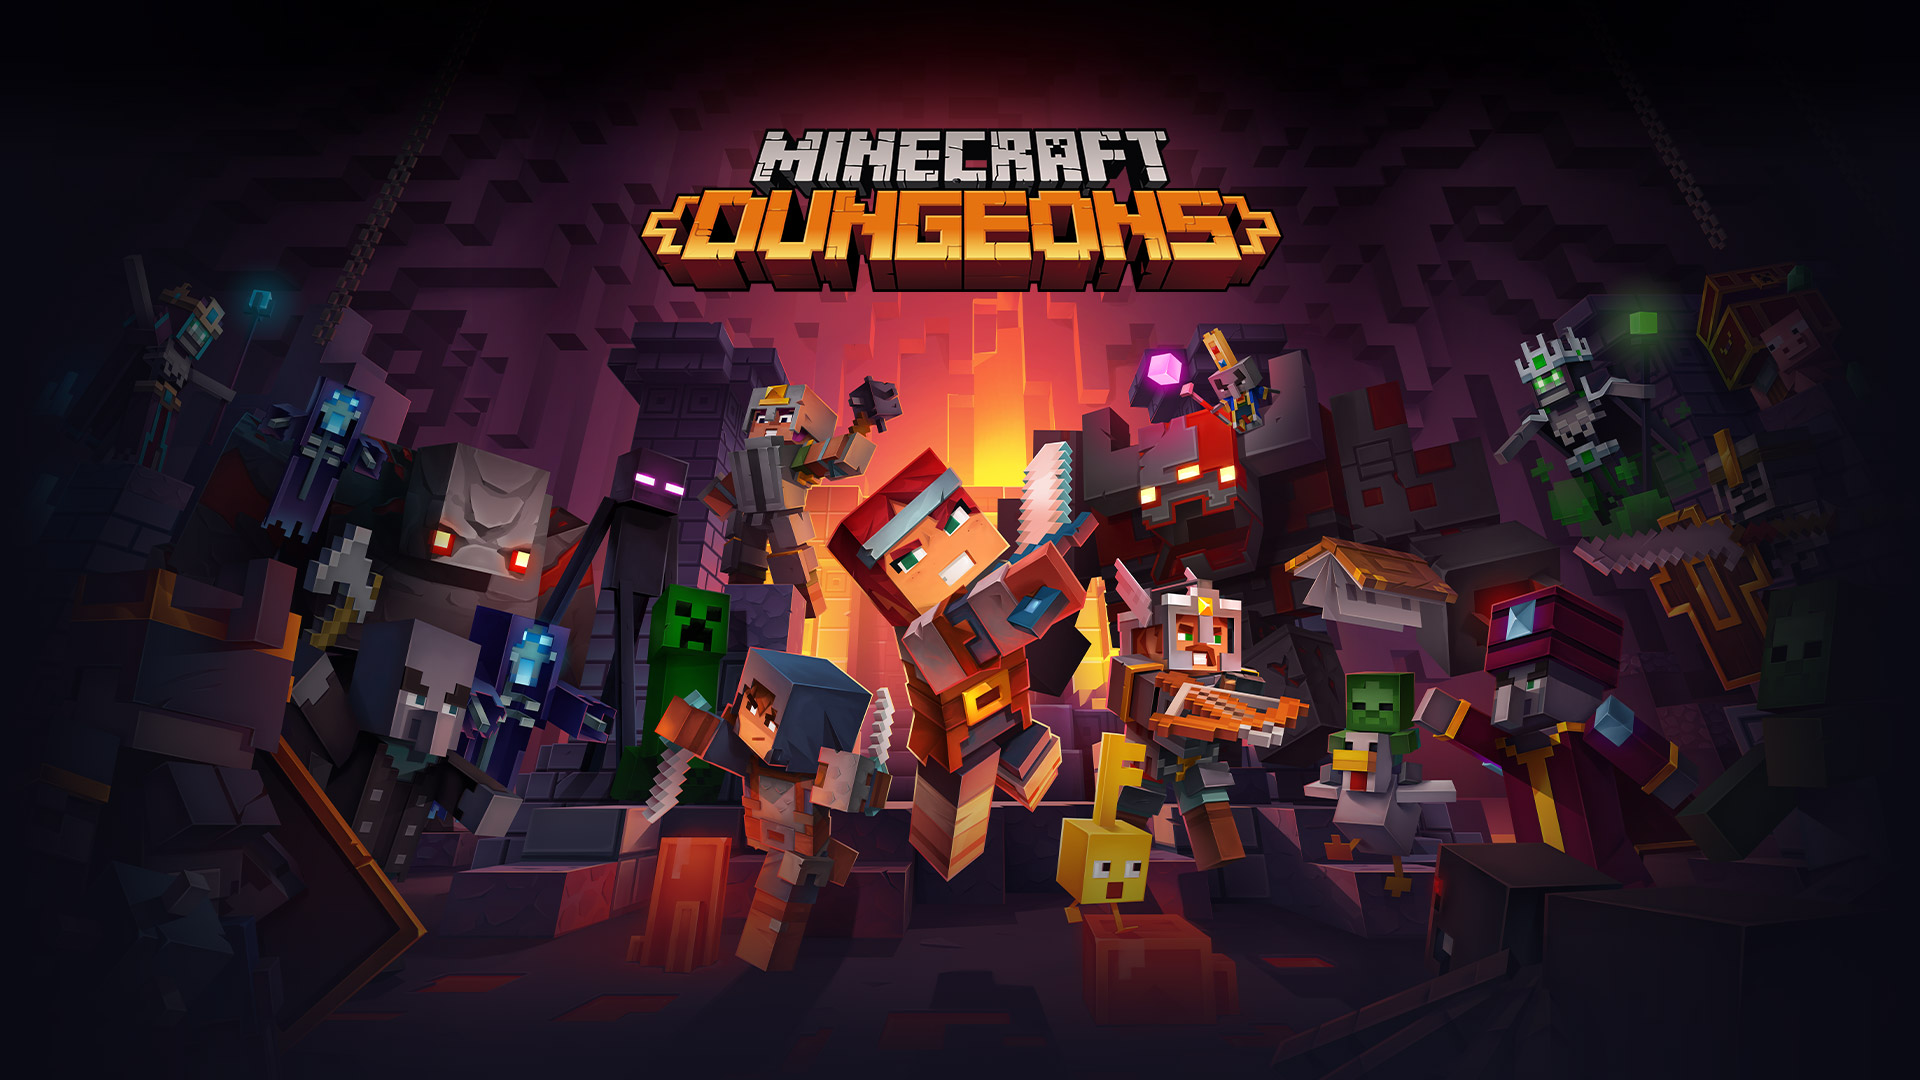 Λογότυπο Minecraft Dungeons μπροστά από όλους τους χαρακτήρες Minecraft που πολεμούν σε ένα μπουντρούμι